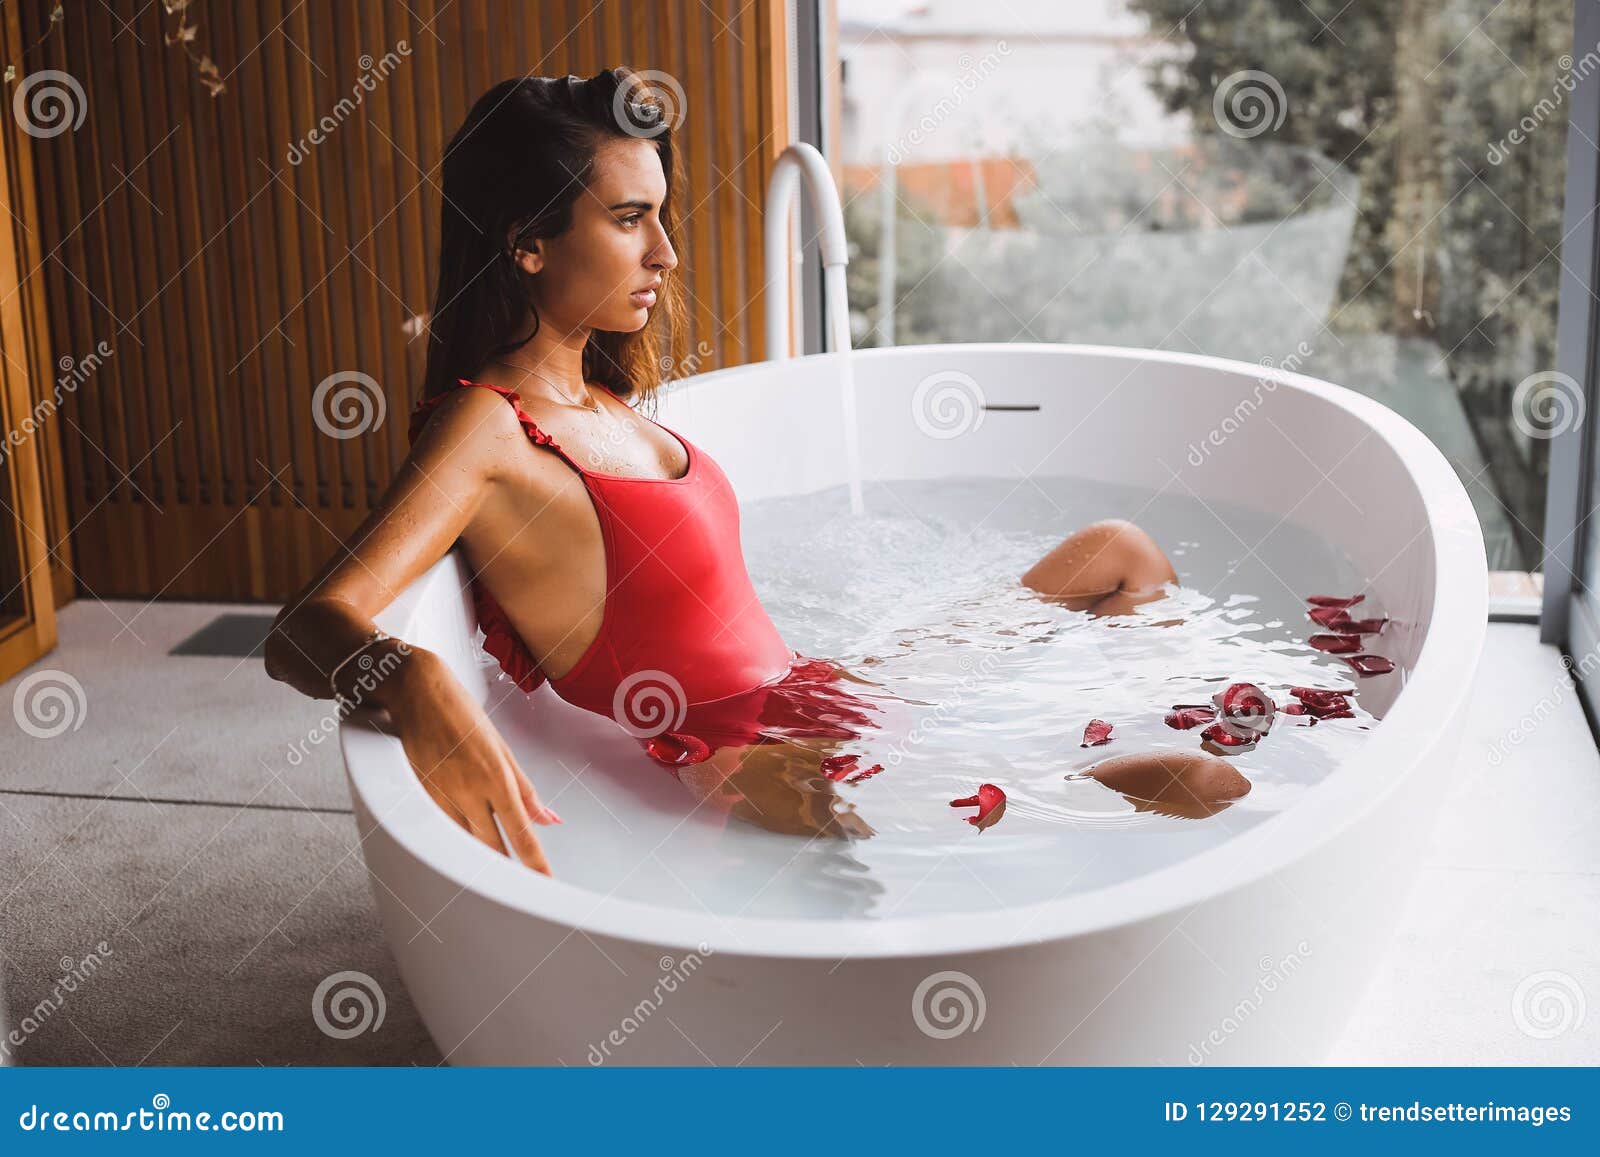 becky tarrant add girls in bath tub photo